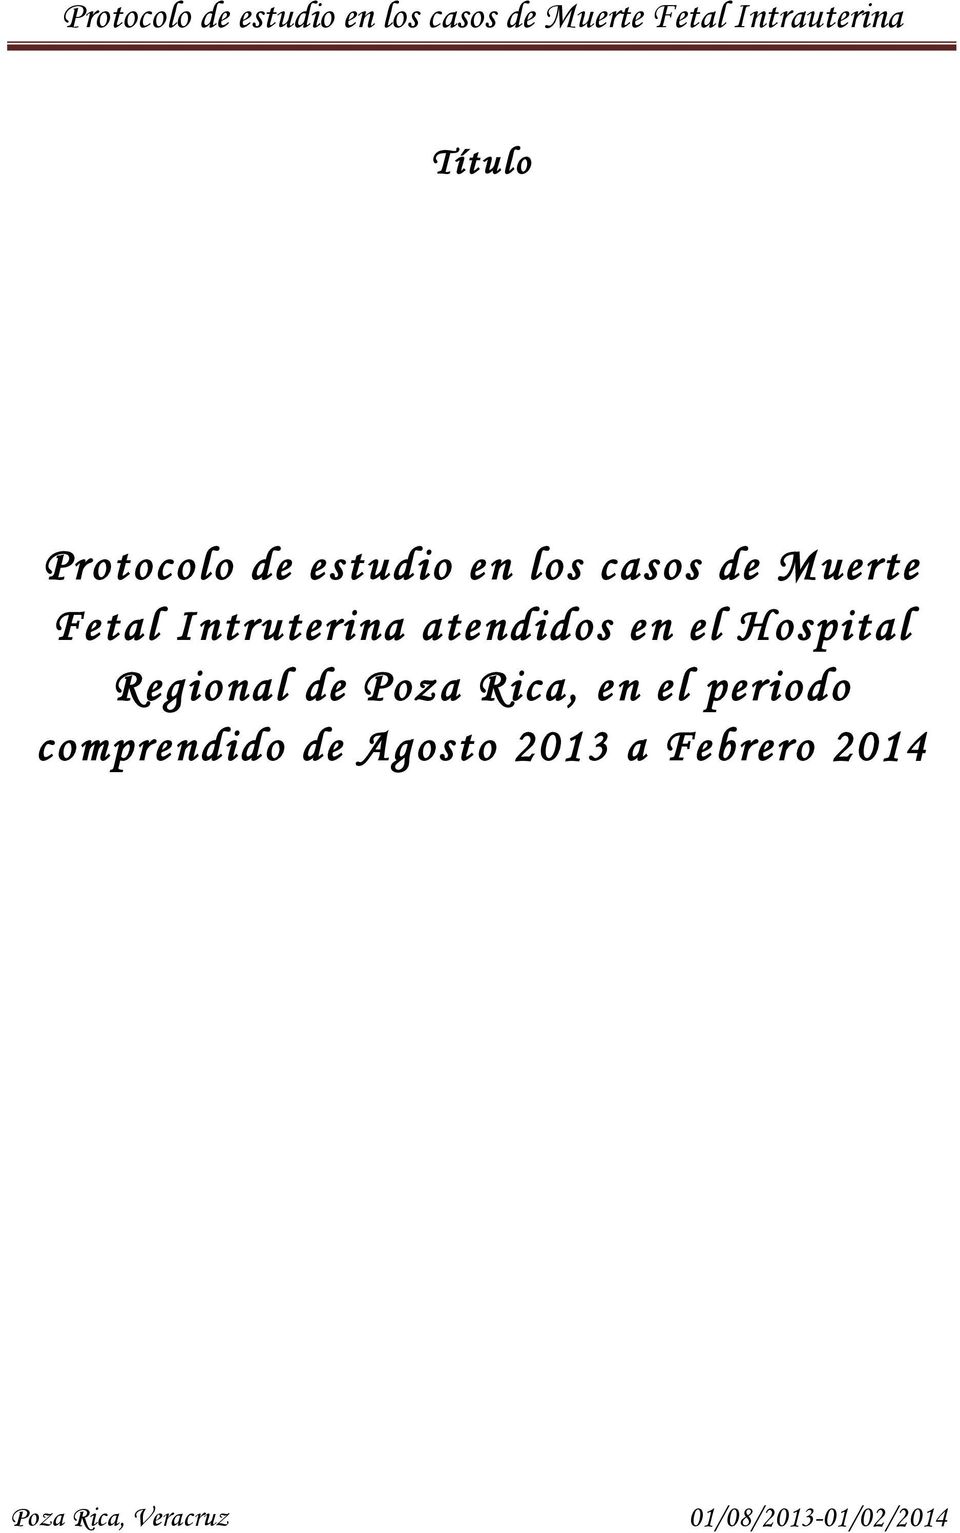 el Hospital Regional de Poza Rica, en el